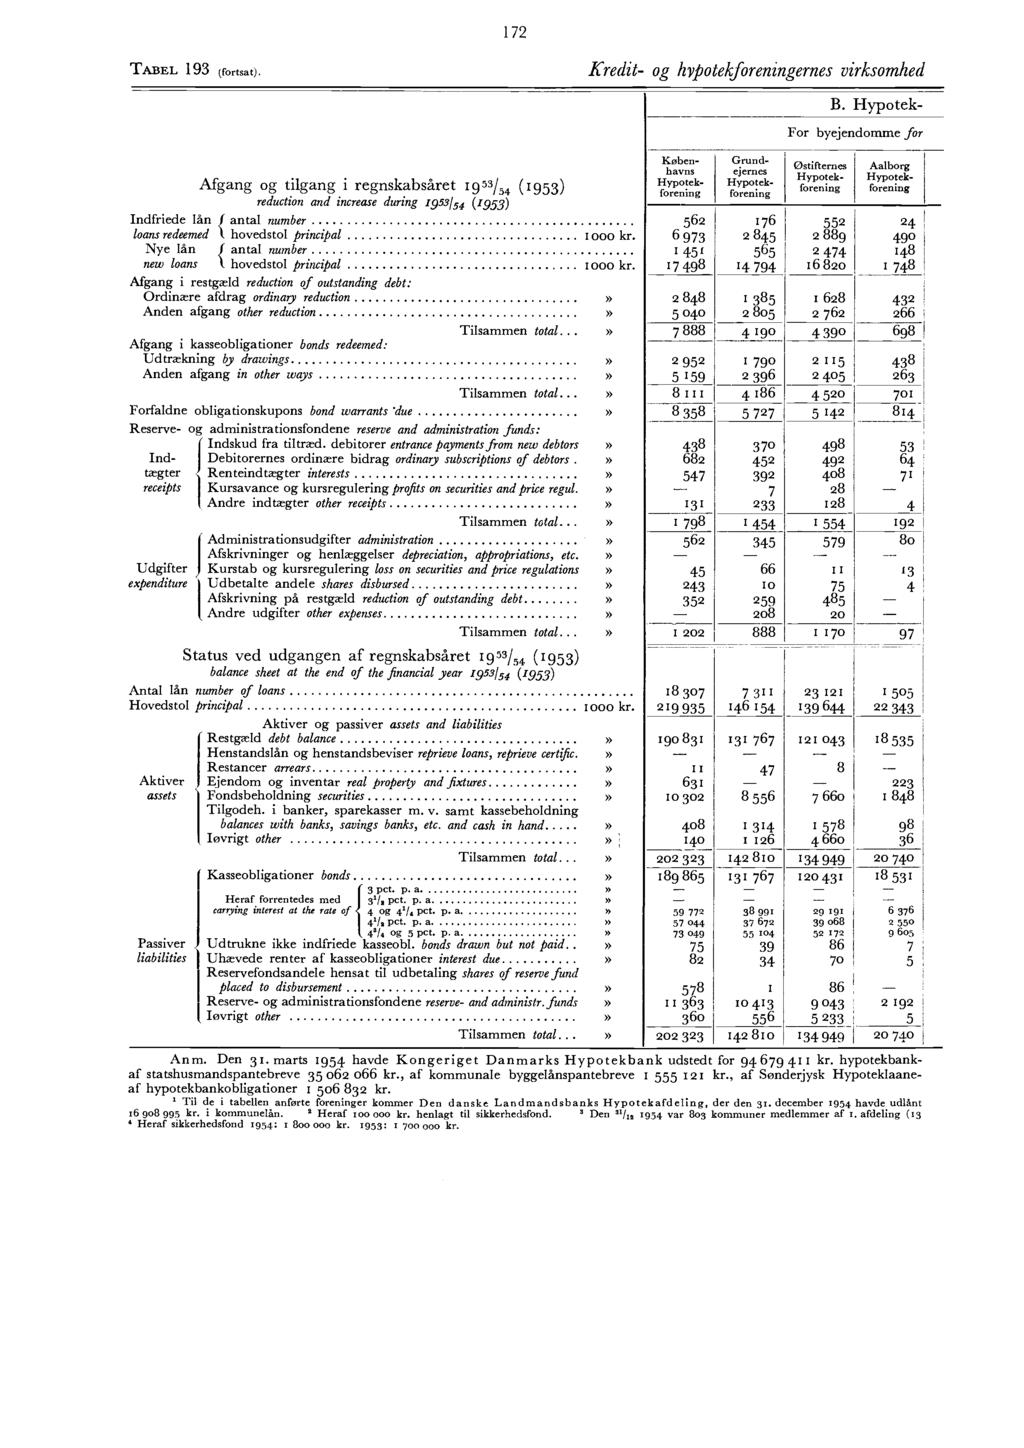 7 TABEL 93 (fortsat). Kredit og hypotekforeningernes virksomhed Afgang og tilgang i regnskabsåret J93/ (93) reduction and increase during 93/ (93) B.